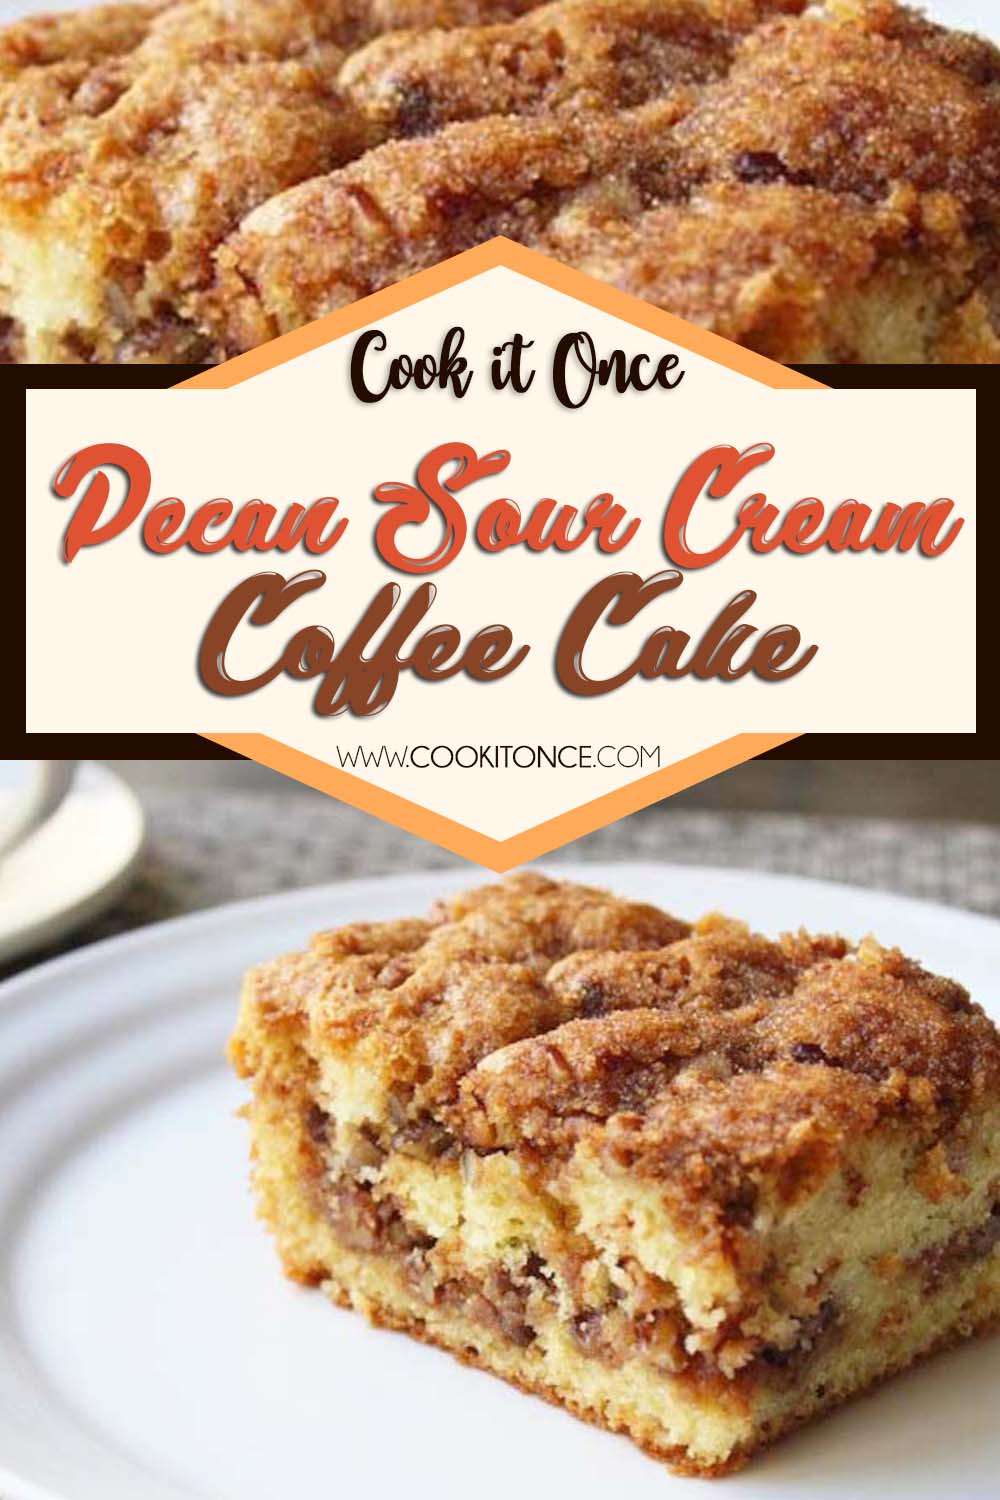 Pecan Sour Cream Coffee Cake Recipe